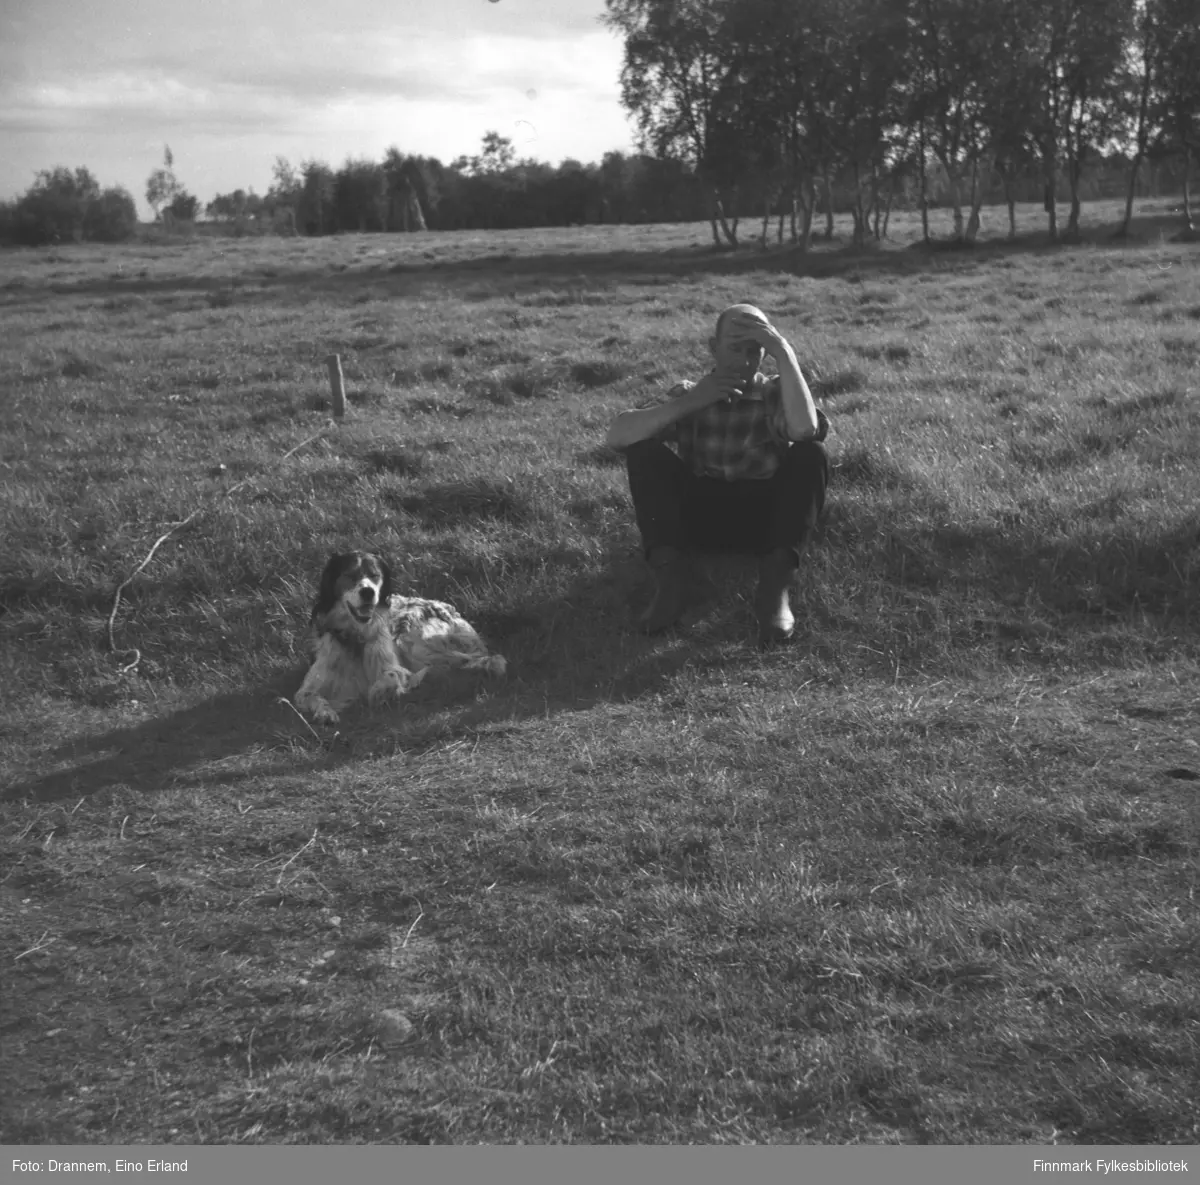 Uuno Lappalainen sitter på et jorde med hunden Rexi ved siden av seg. Stedet er ukjent.